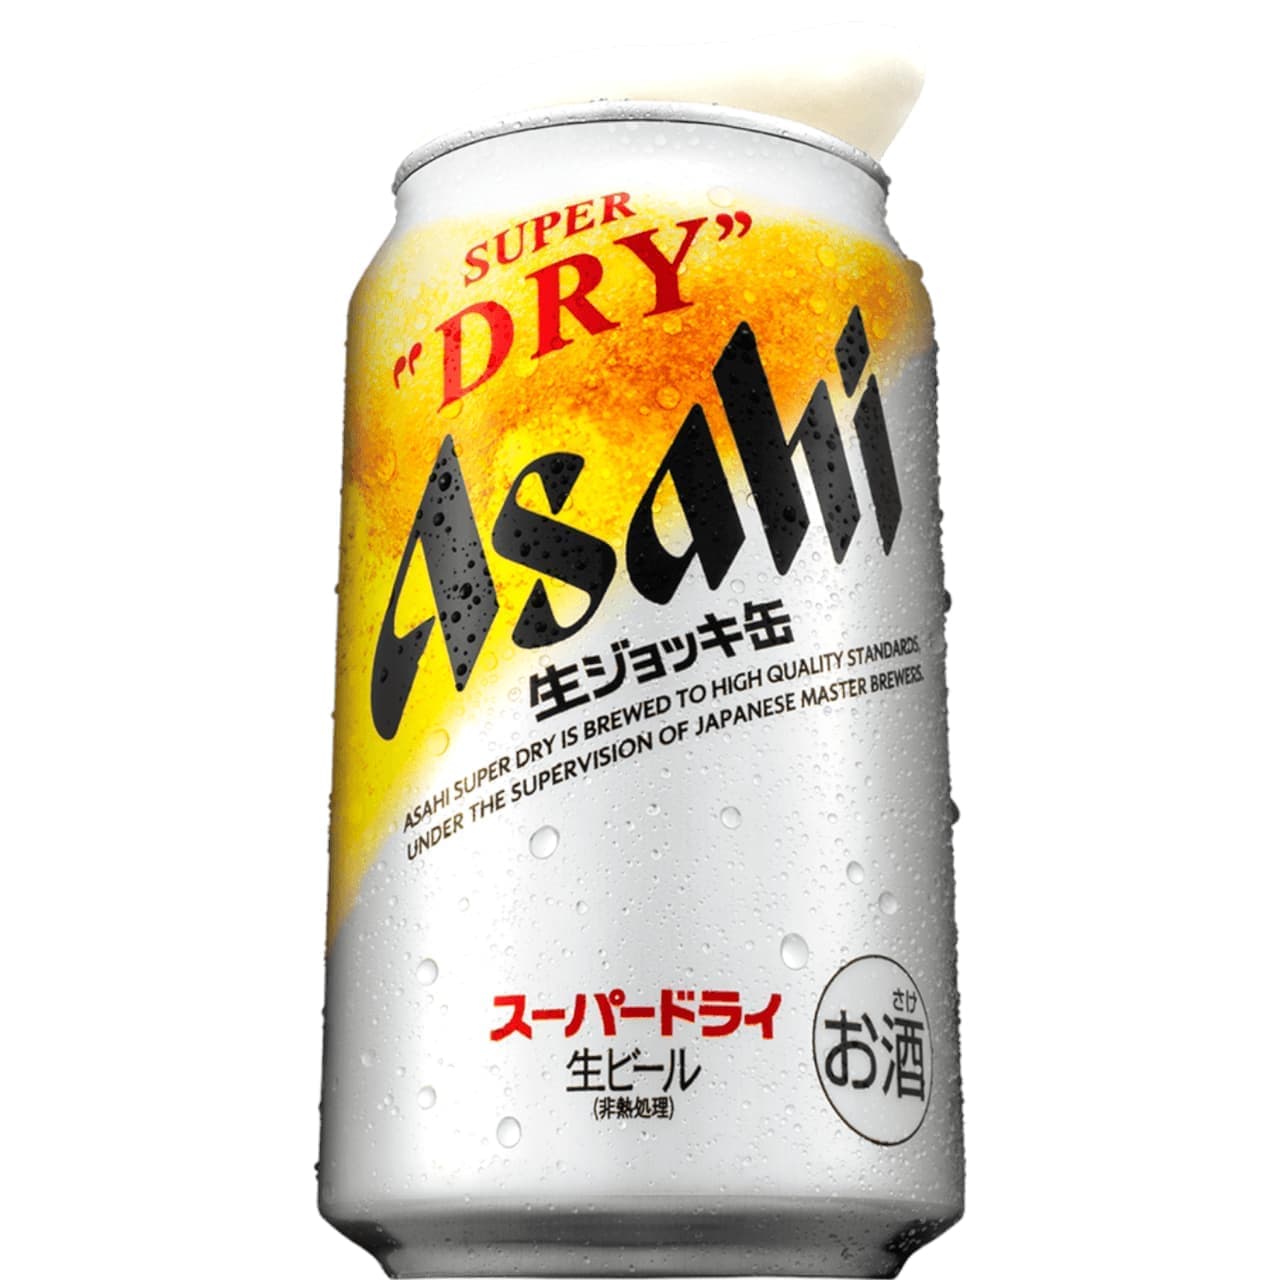 Asahi Beer "Asahi Super Dry Draft Jockey Can